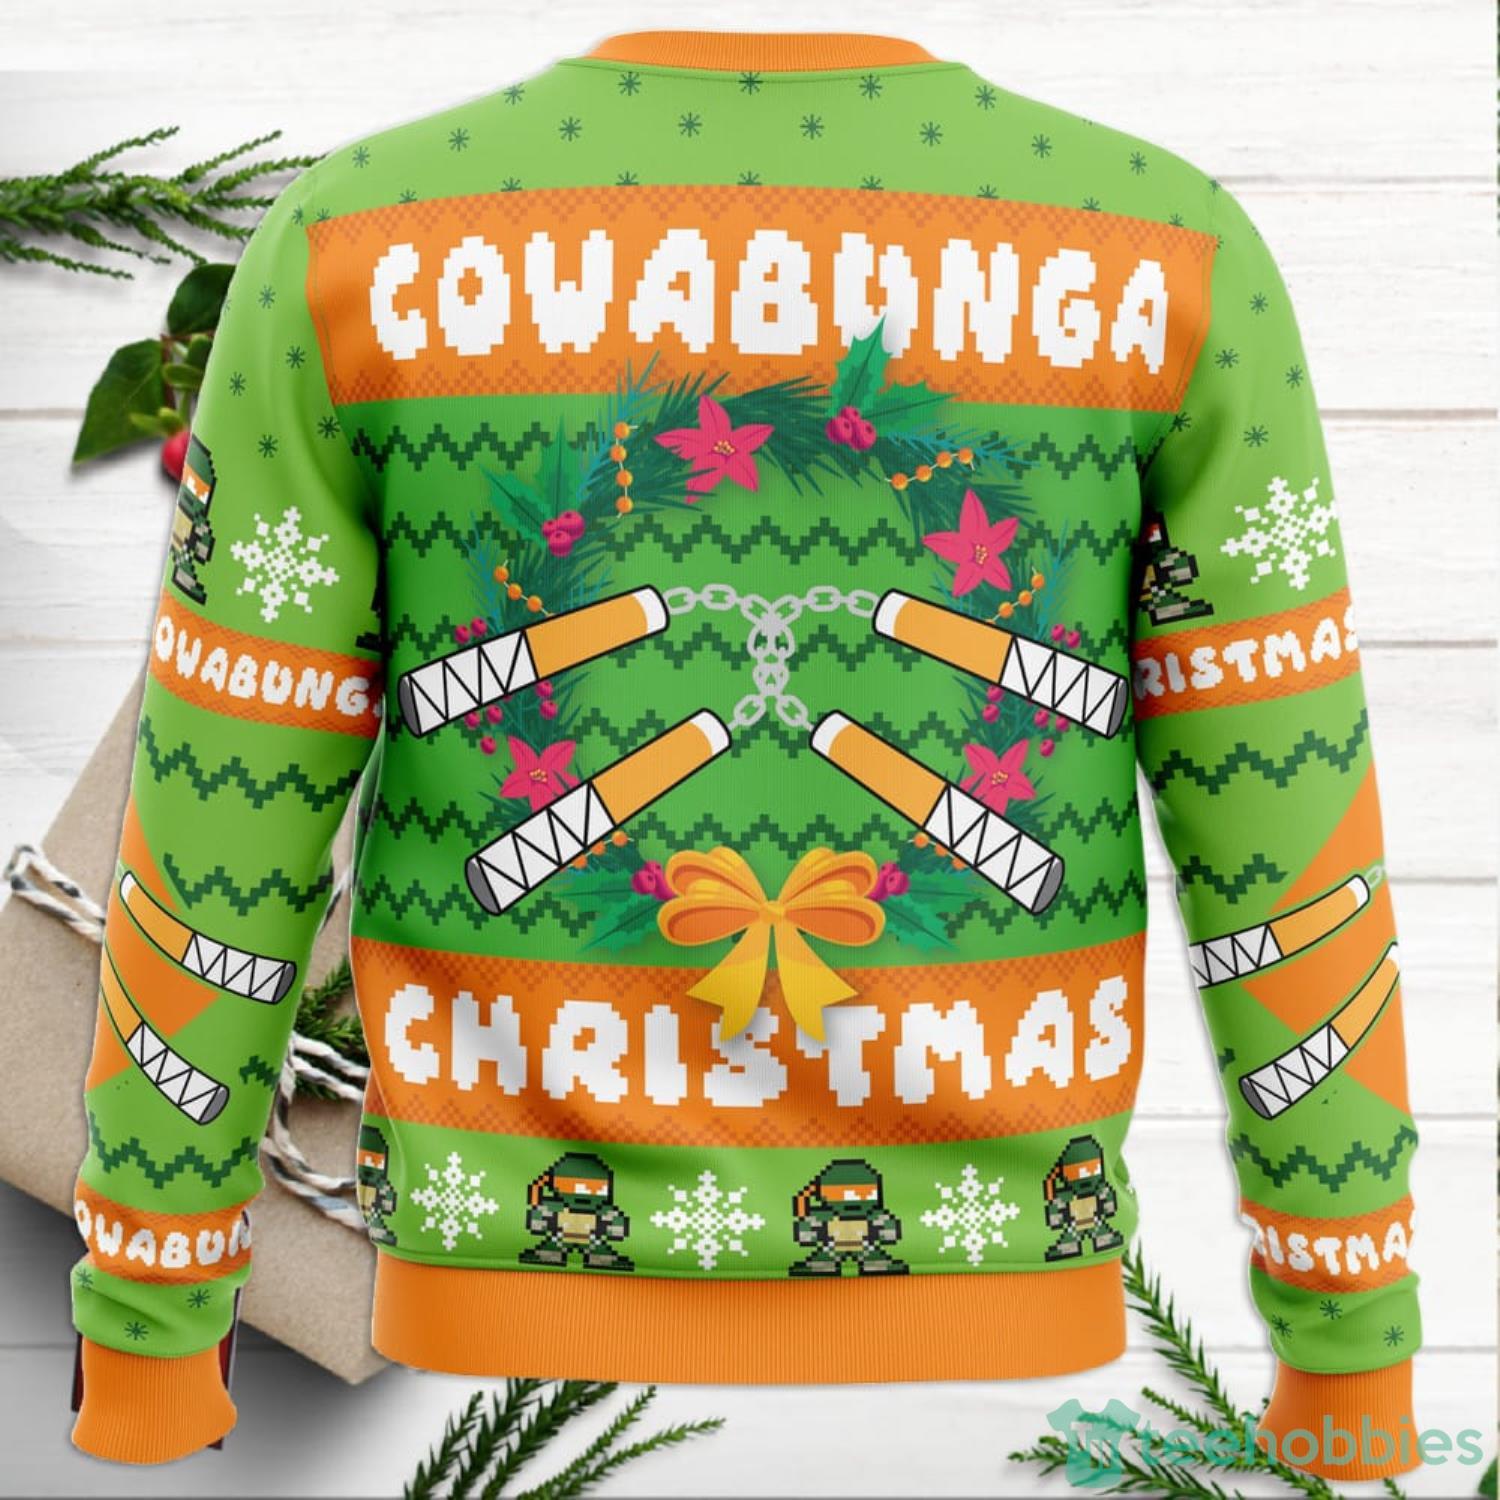 https://image.teehobbies.us/2022/11/cowabunga-michaelangelo-christmas-teenage-mutant-ninja-turtles-ugly-christmas-sweater-for-men-and-women-1.jpg